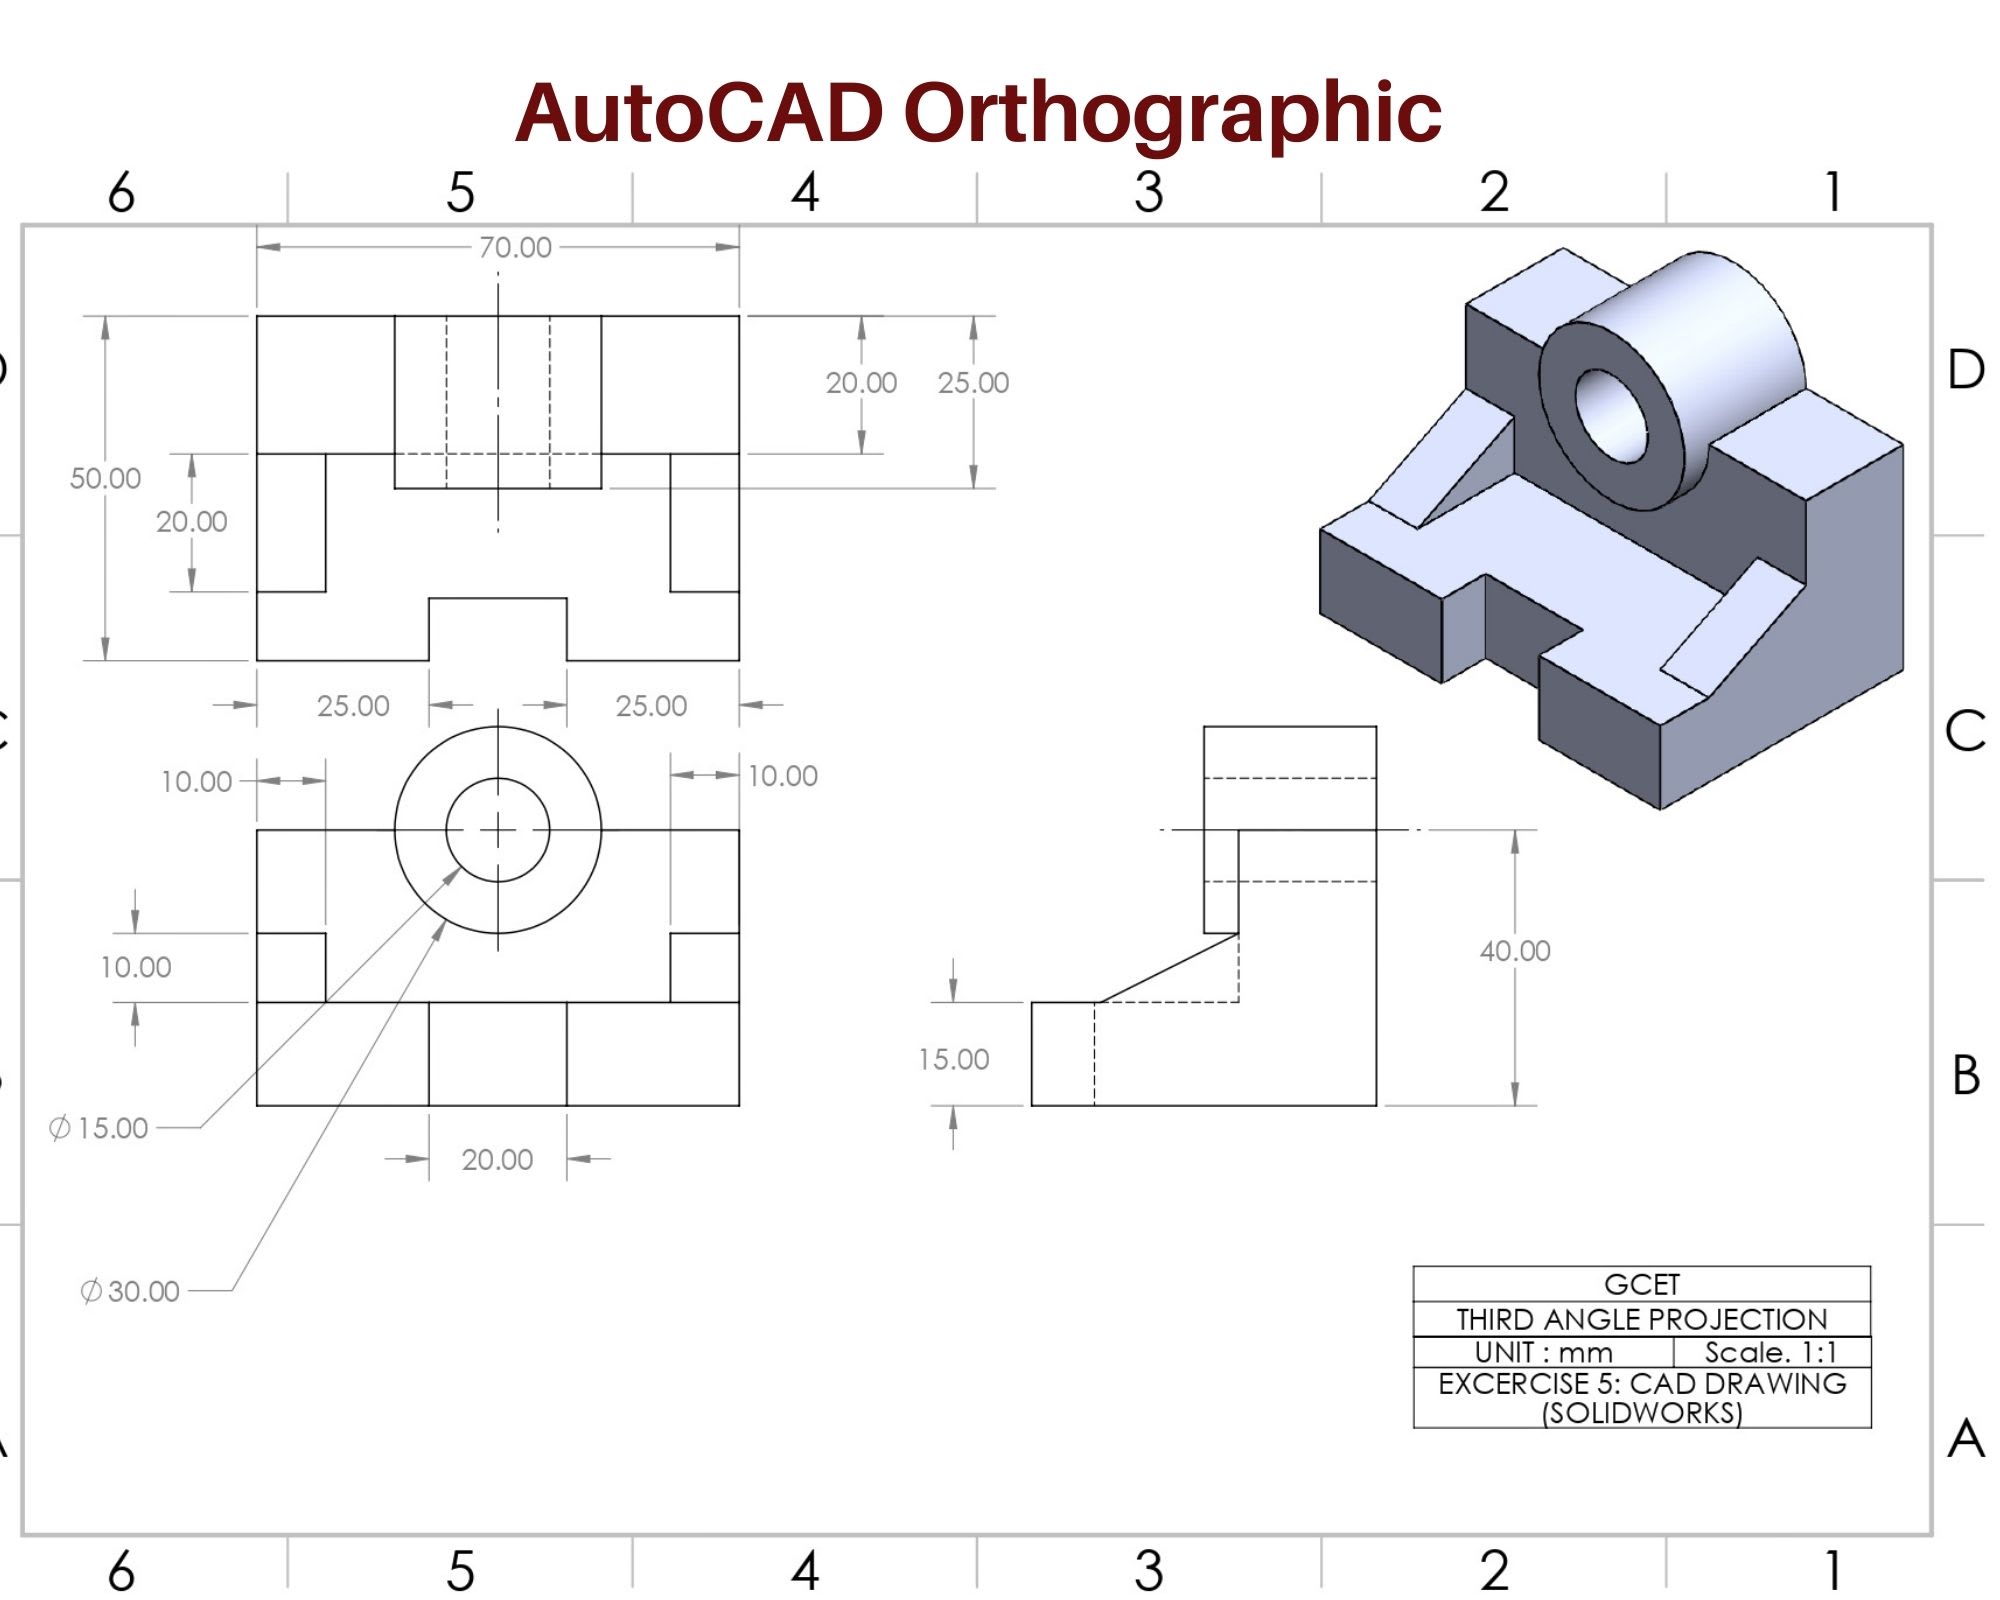 Vẽ kỹ thuật cơ khí 2D, 3D trong autocad và inventor giúp bạn dễ dàng trình bày và thiết kế các bản vẽ kỹ thuật chuyên nghiệp. Hãy tham gia xem những hình ảnh kỹ thuật cơ khí sinh động và đẹp mắt được vẽ bằng autocad và inventor mà chúng tôi sẽ trình chiếu.